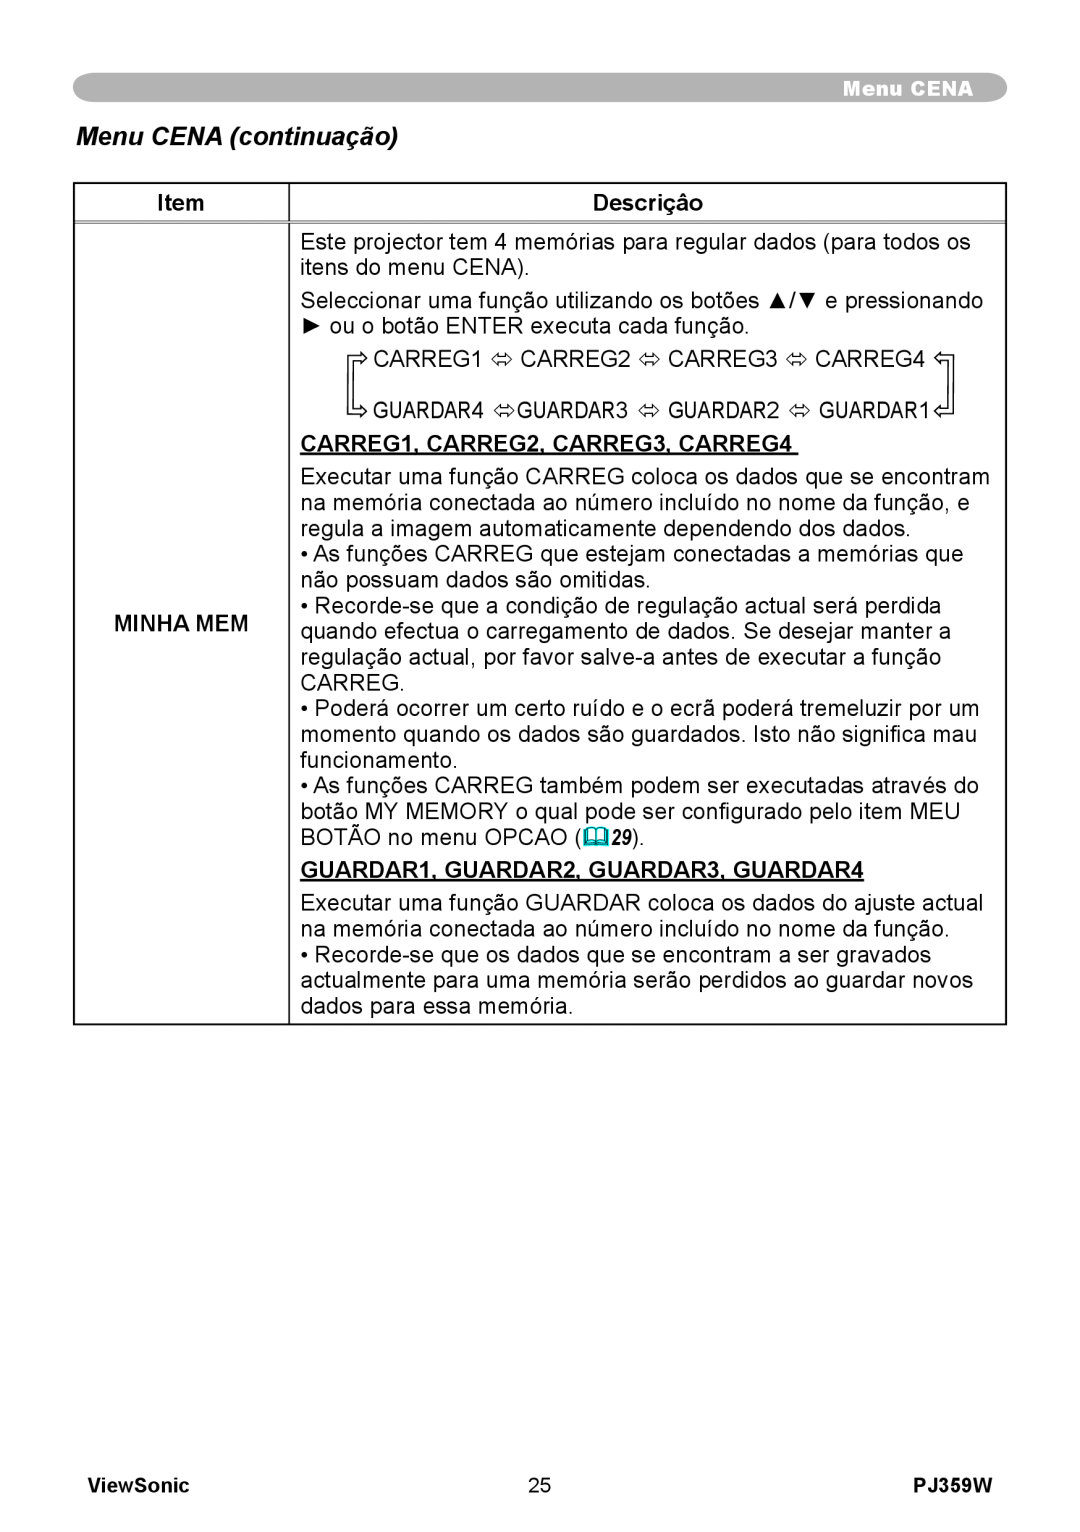 ViewSonic PJ359 manual Menu CENA continuação, Descriçâo, Minha Mem, CARREG1, CARREG2, CARREG3, CARREG4 